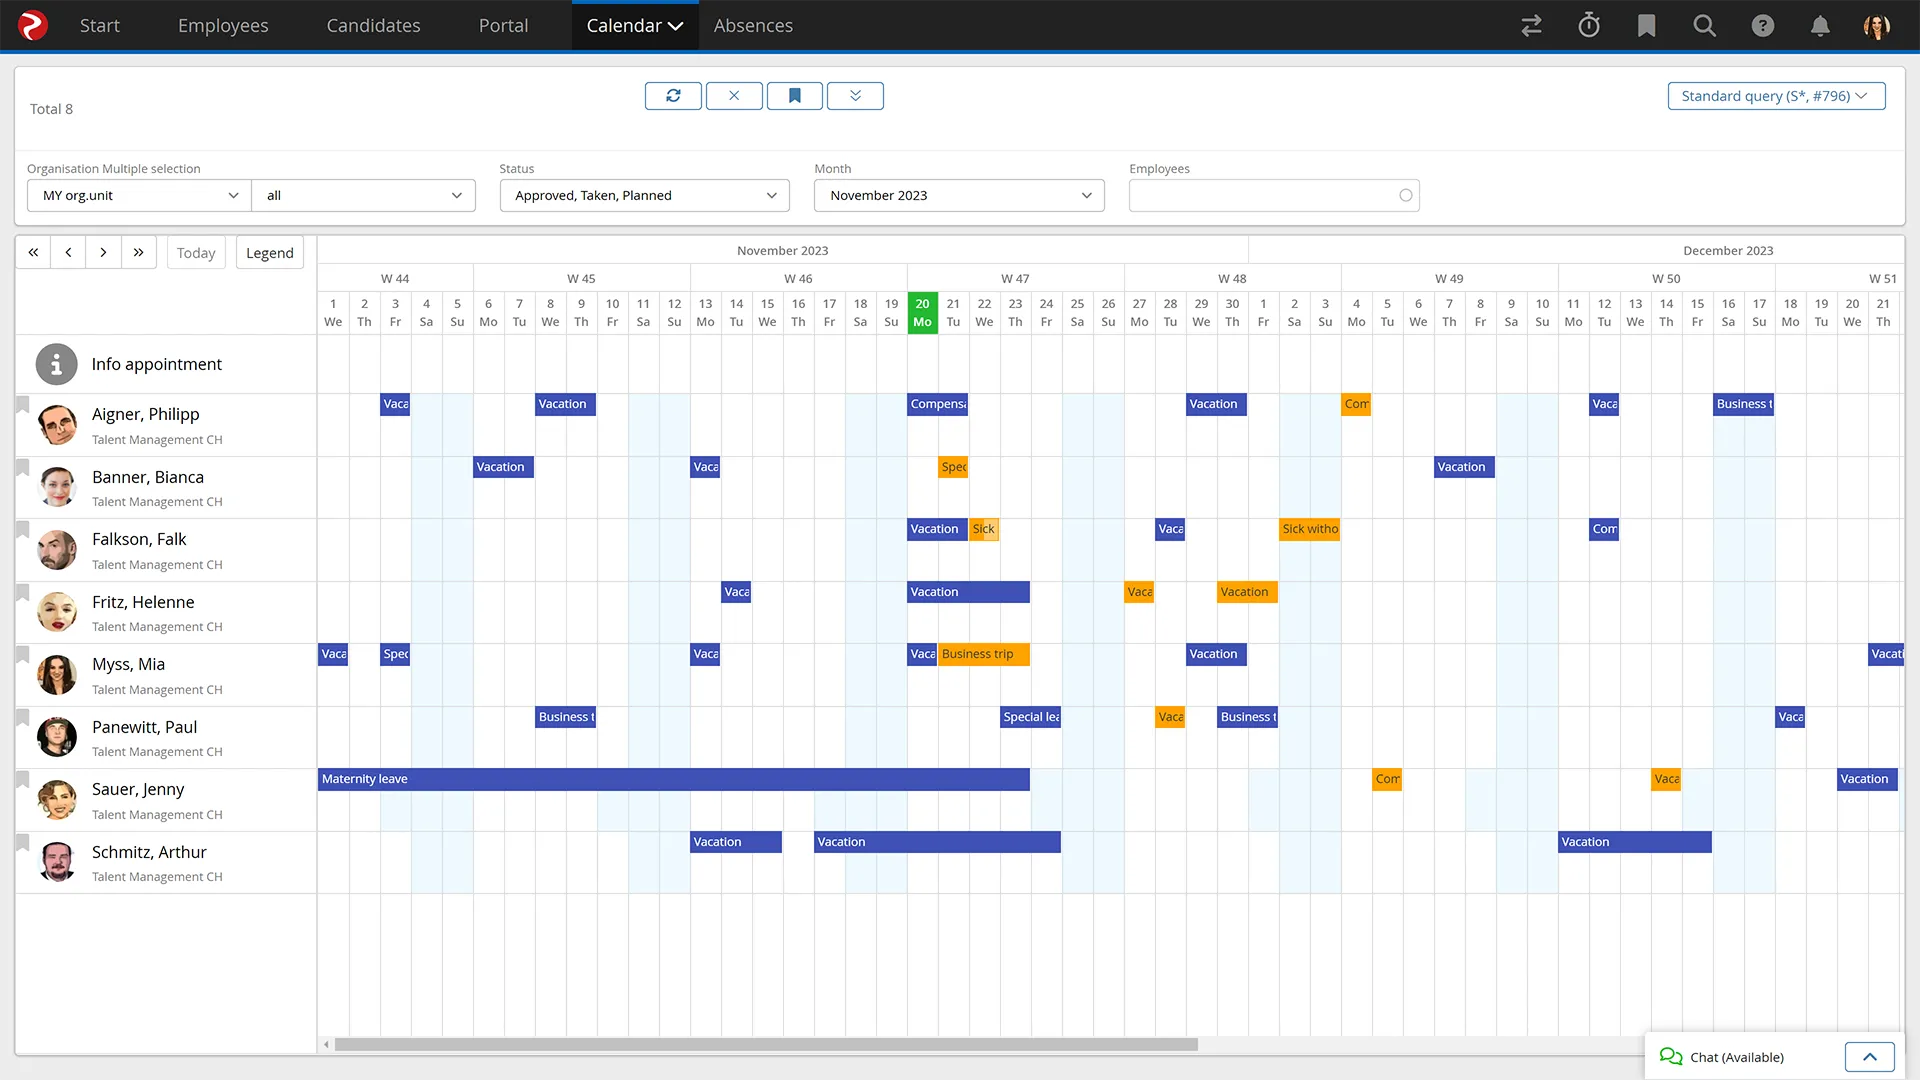 Absence management software - calendar view